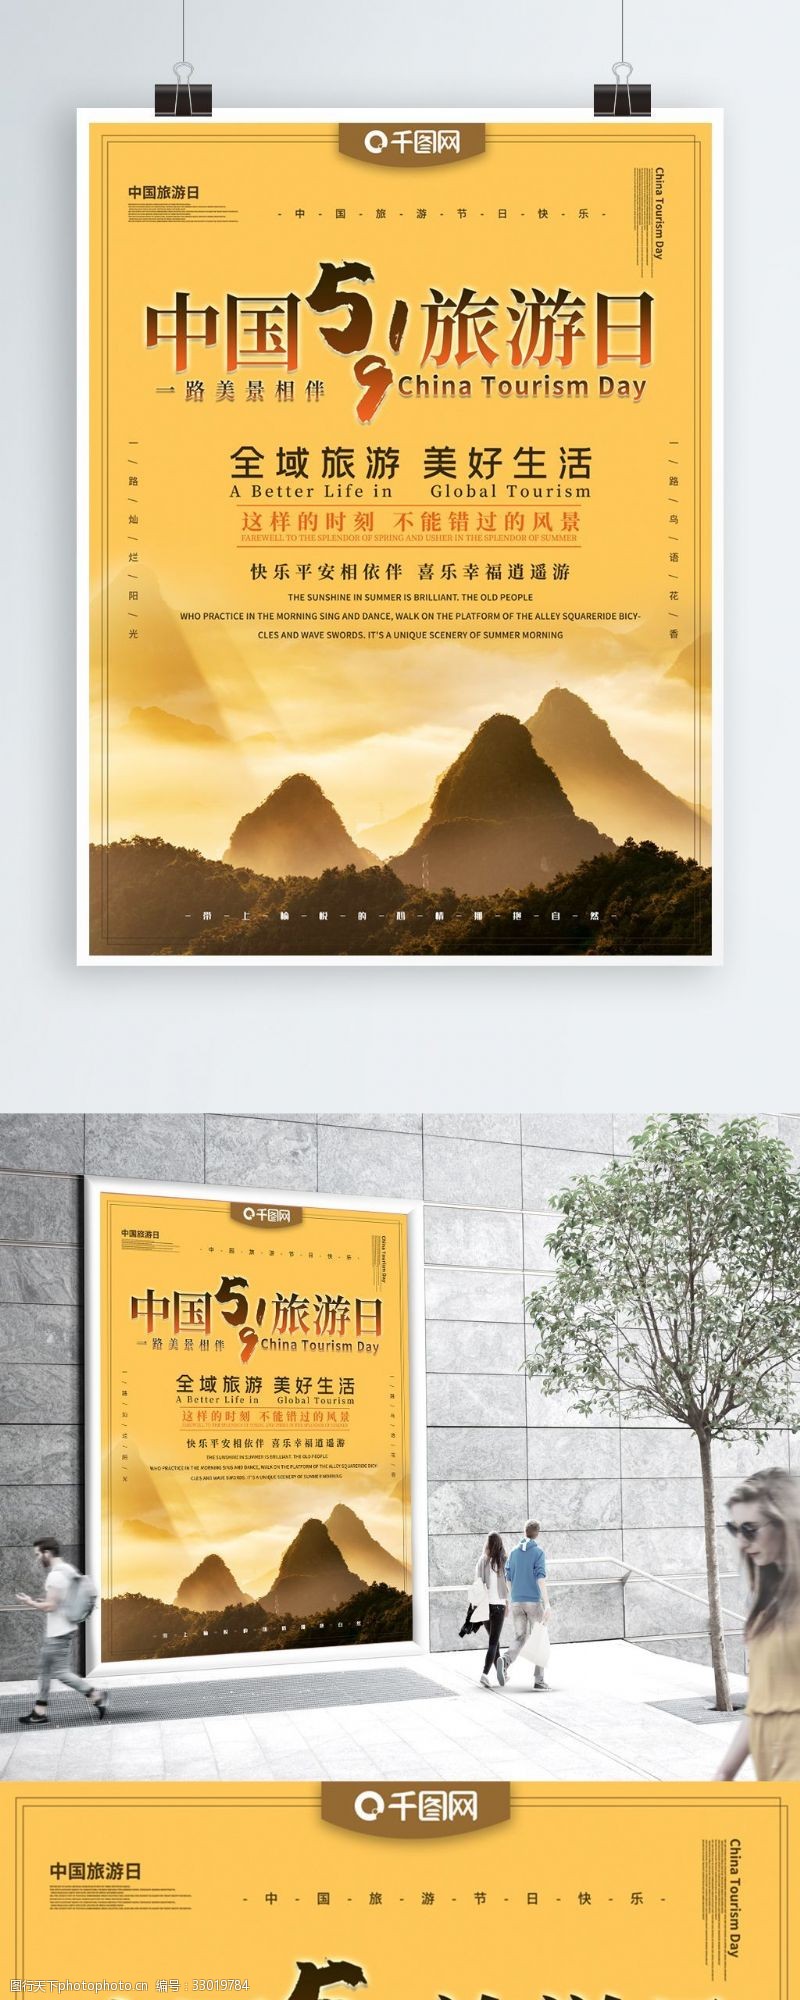 5月19日中国旅游日主题海报